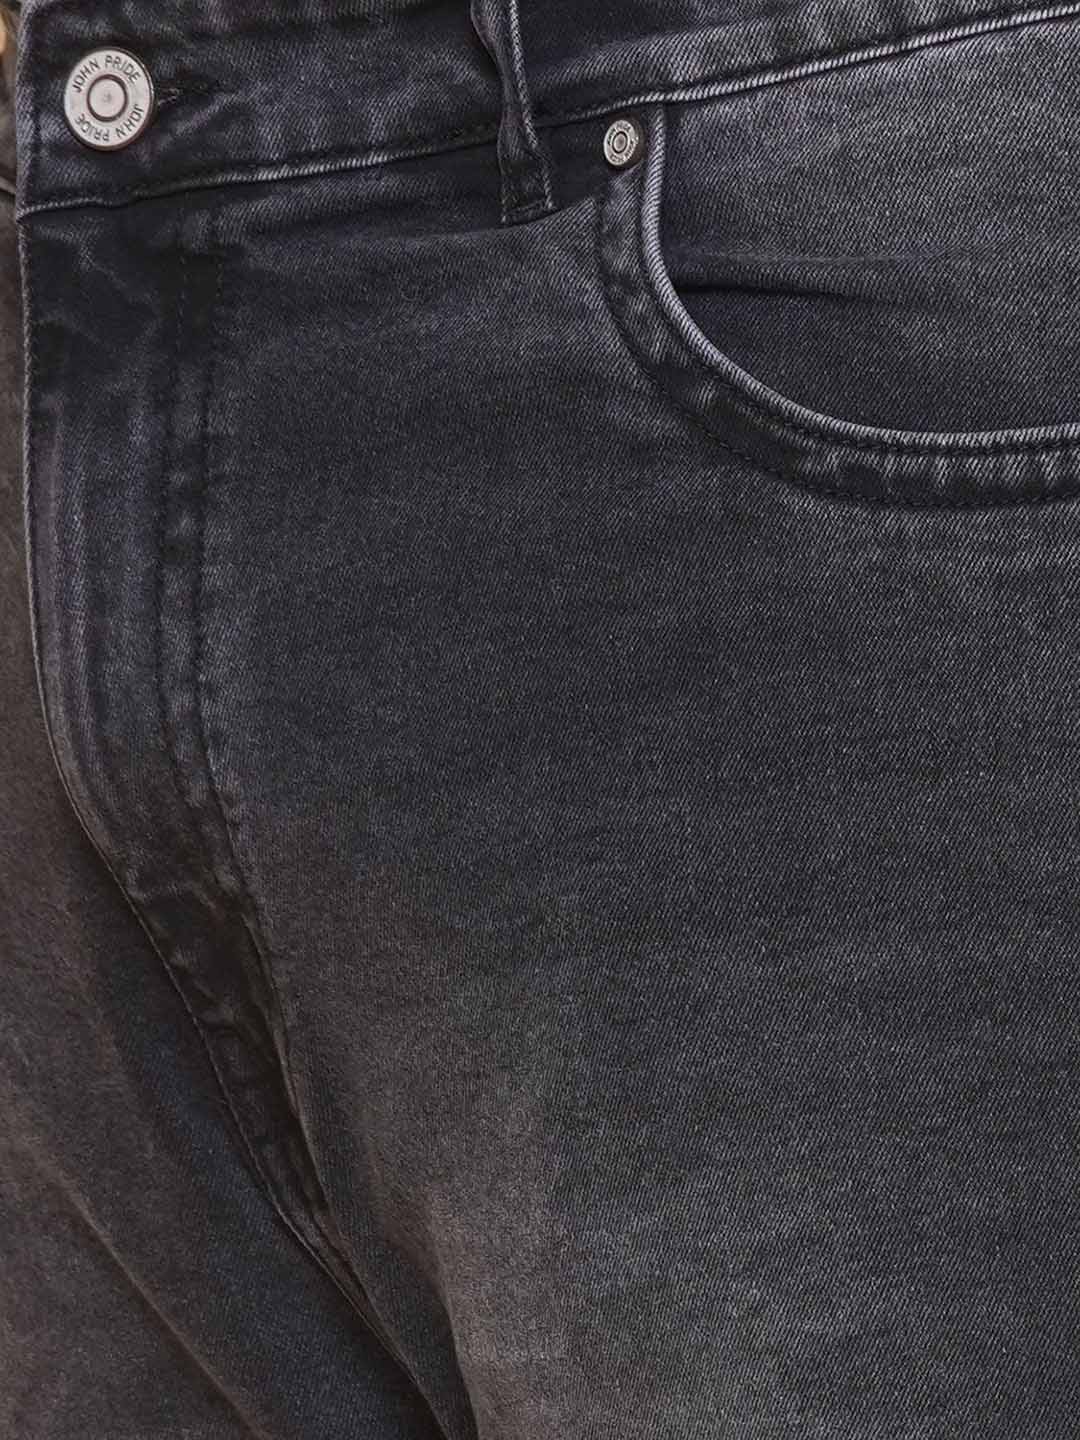 bottomwear/jeans/JPJ27103/jpj27103-2.jpg